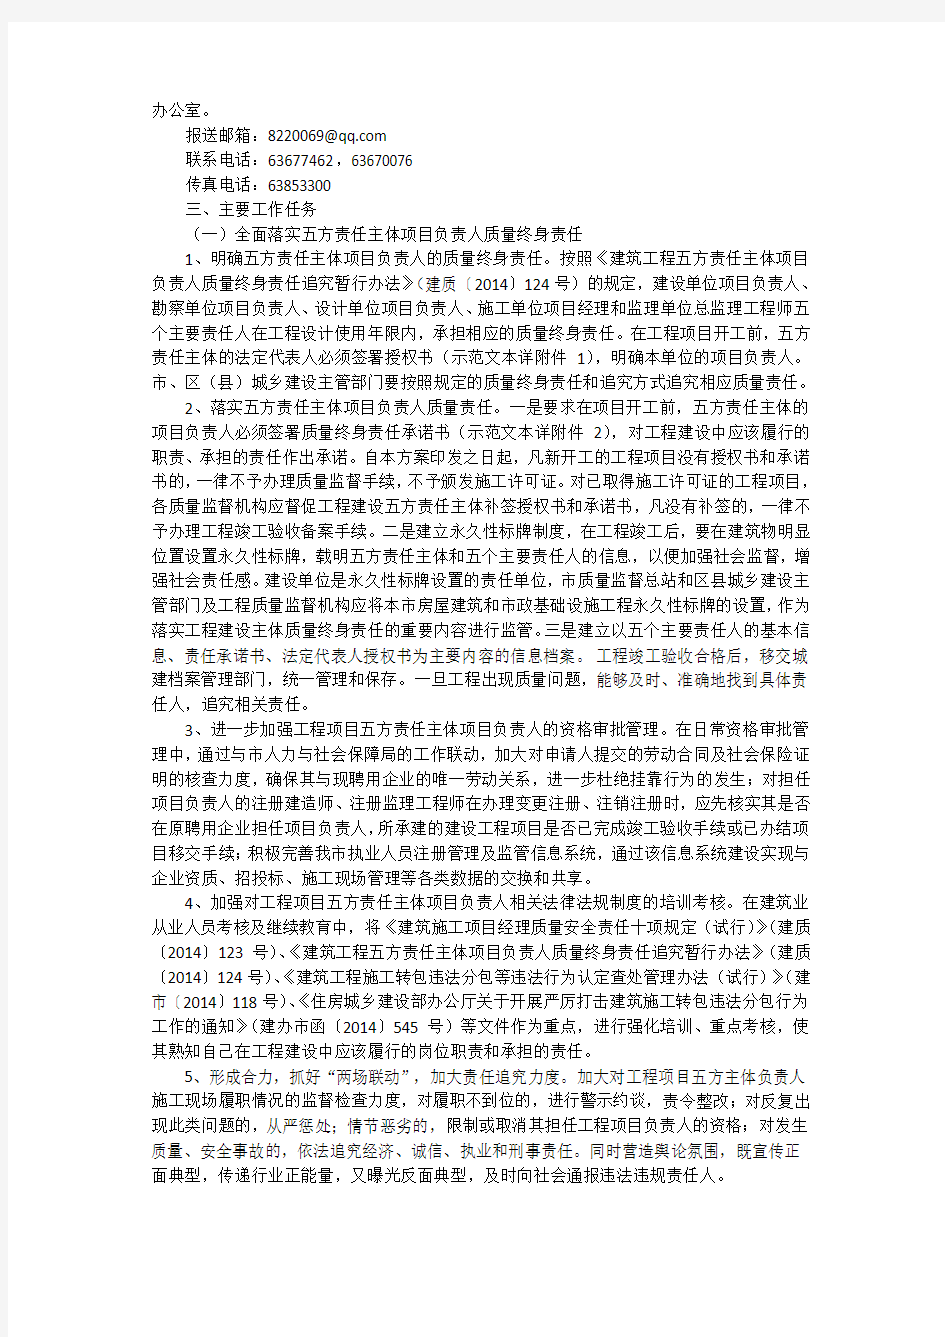 重庆市城乡建设委员会关于印发《重庆市工程质量治理两年行动实施方案》的通知